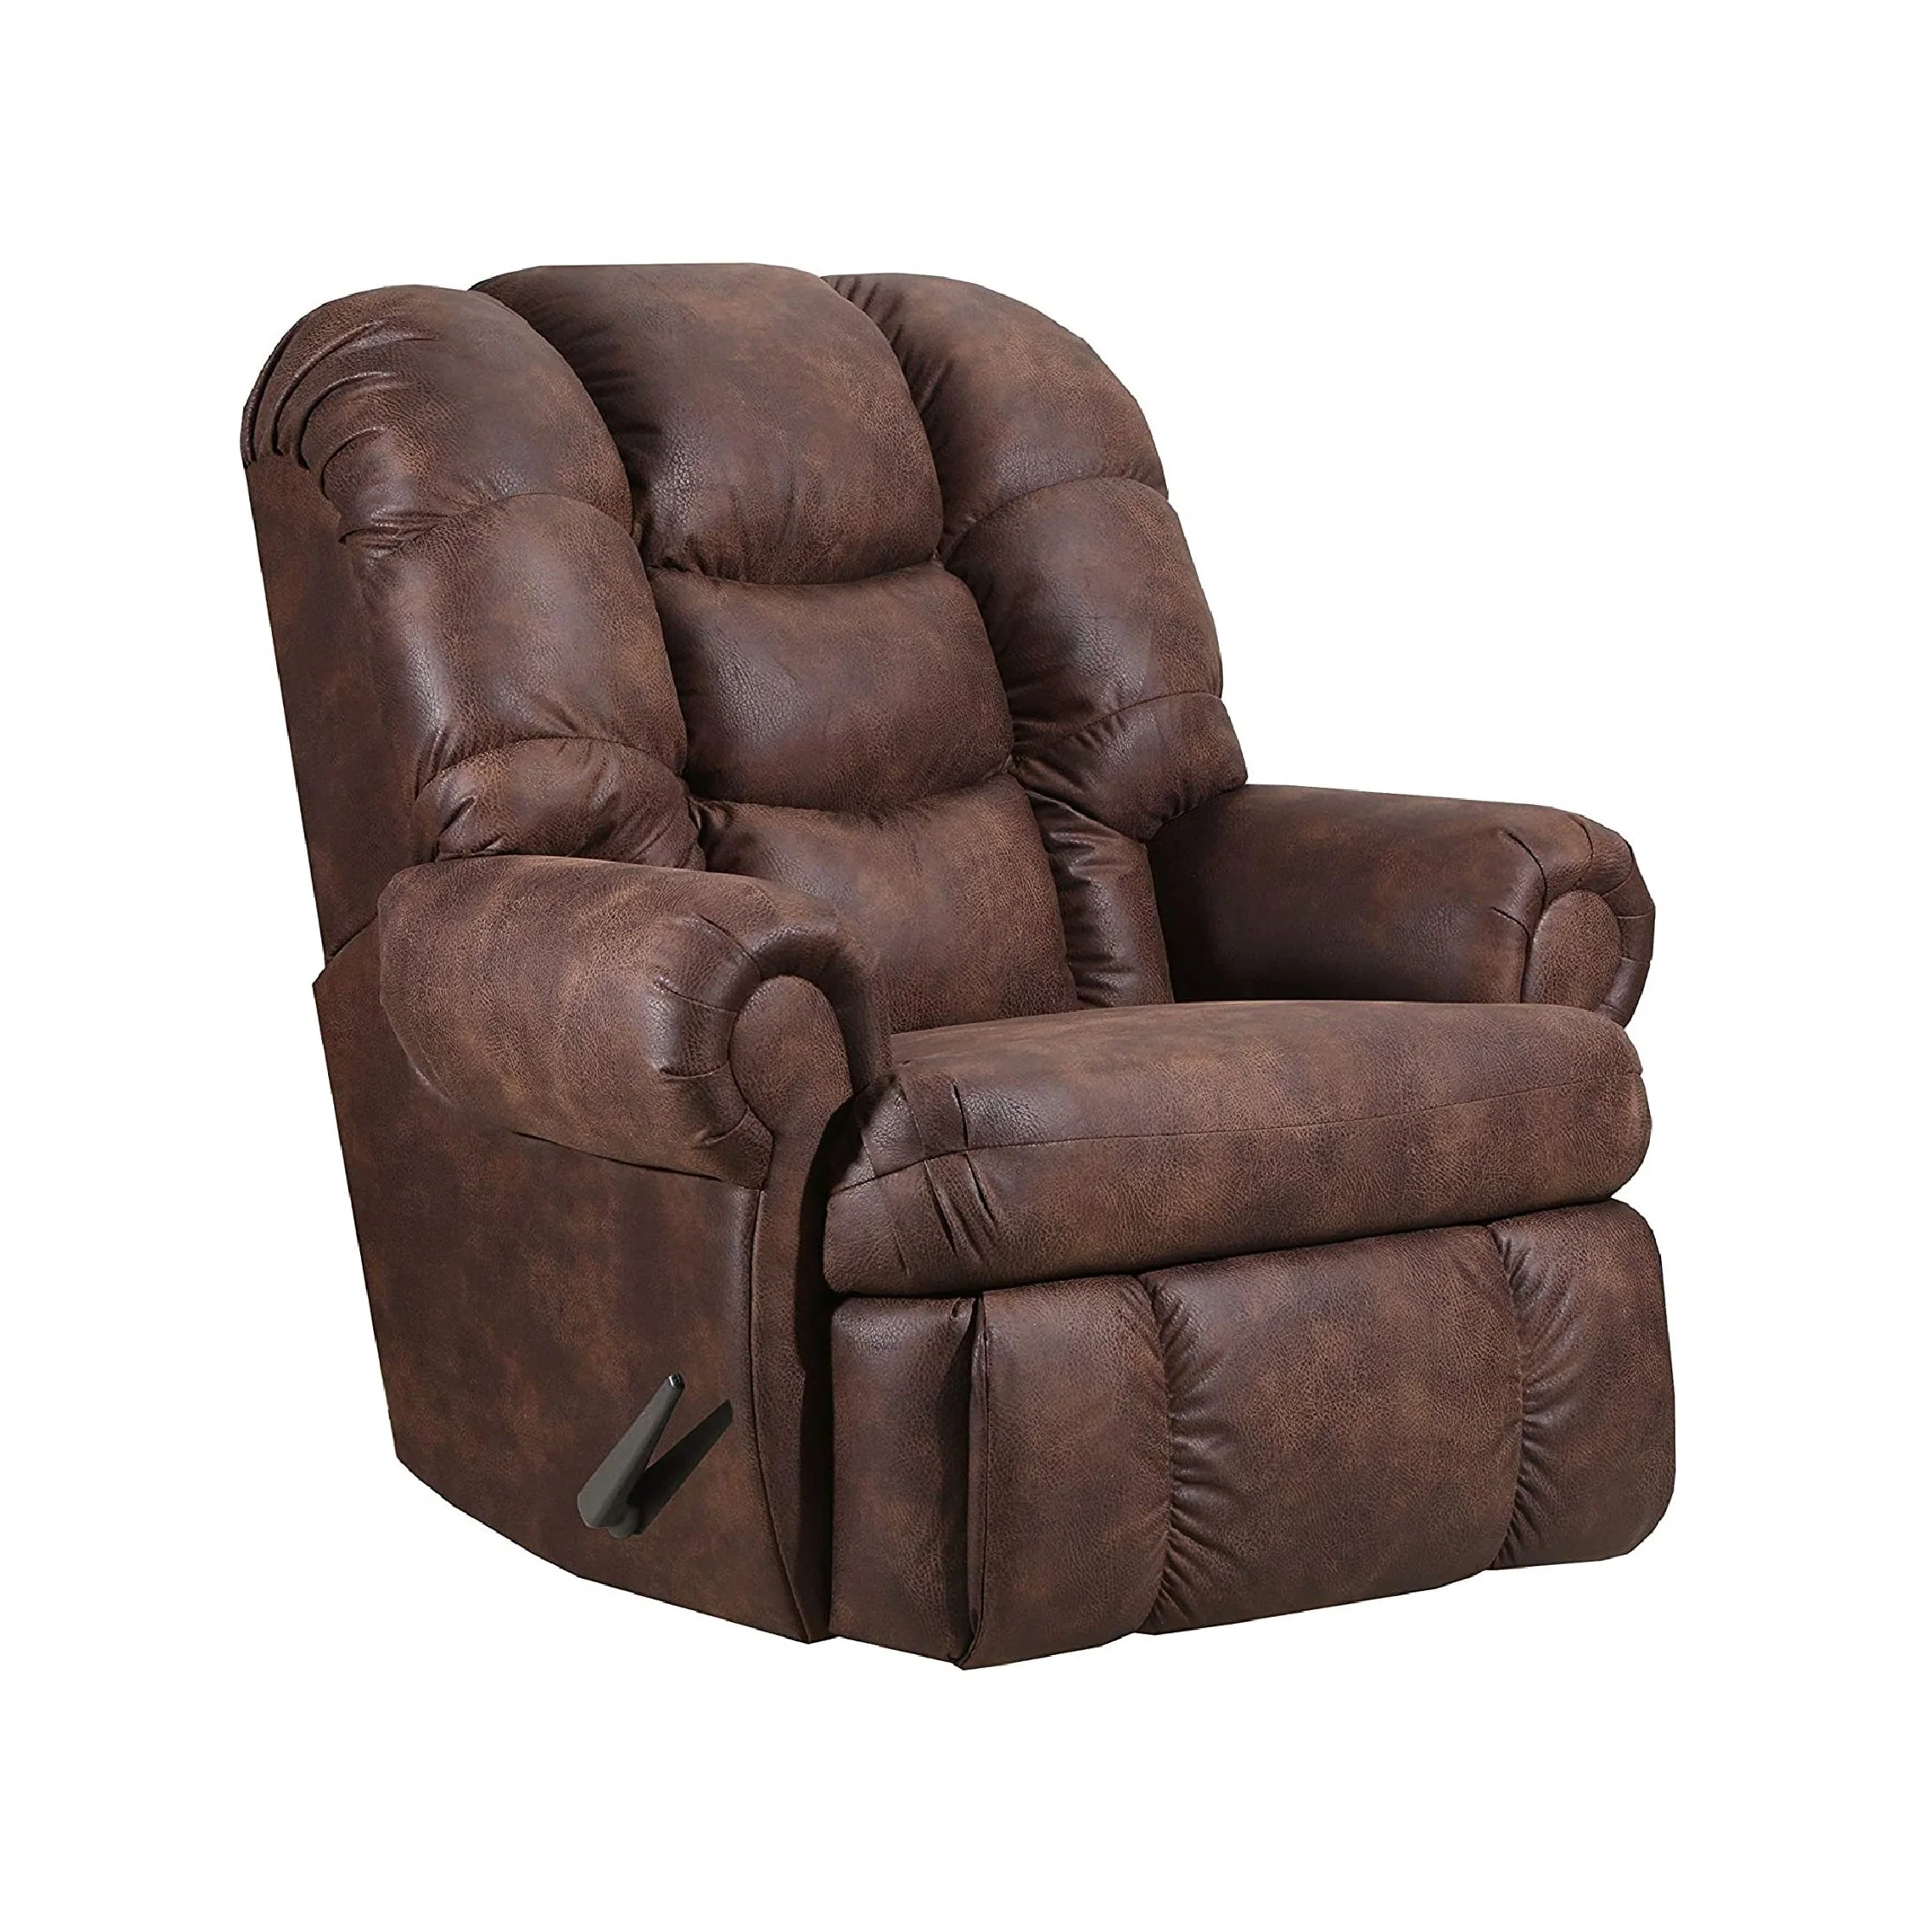 El aire giratoria silla reclinable de cuero Rock personalizada relajarse salón sofá reclinable30 - 100 piezas